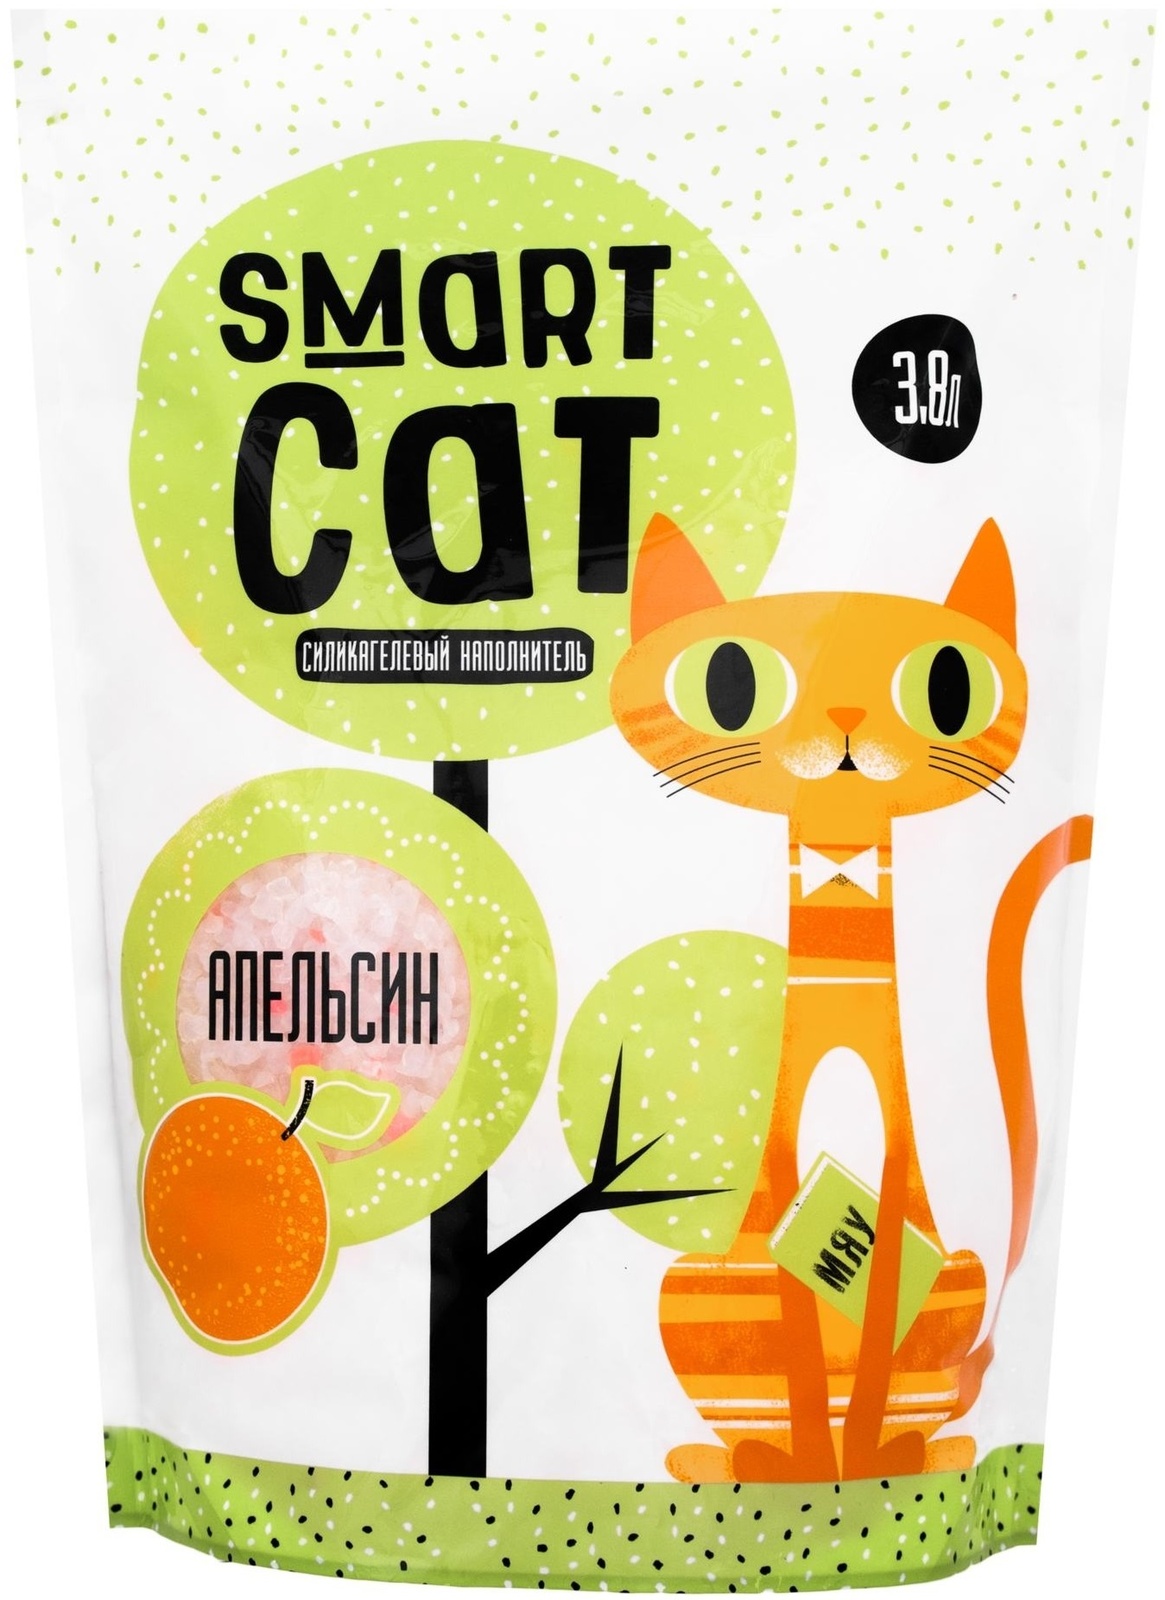 Smart Cat наполнитель силикагелевый наполнитель с ароматом апельсина (1,66 кг)